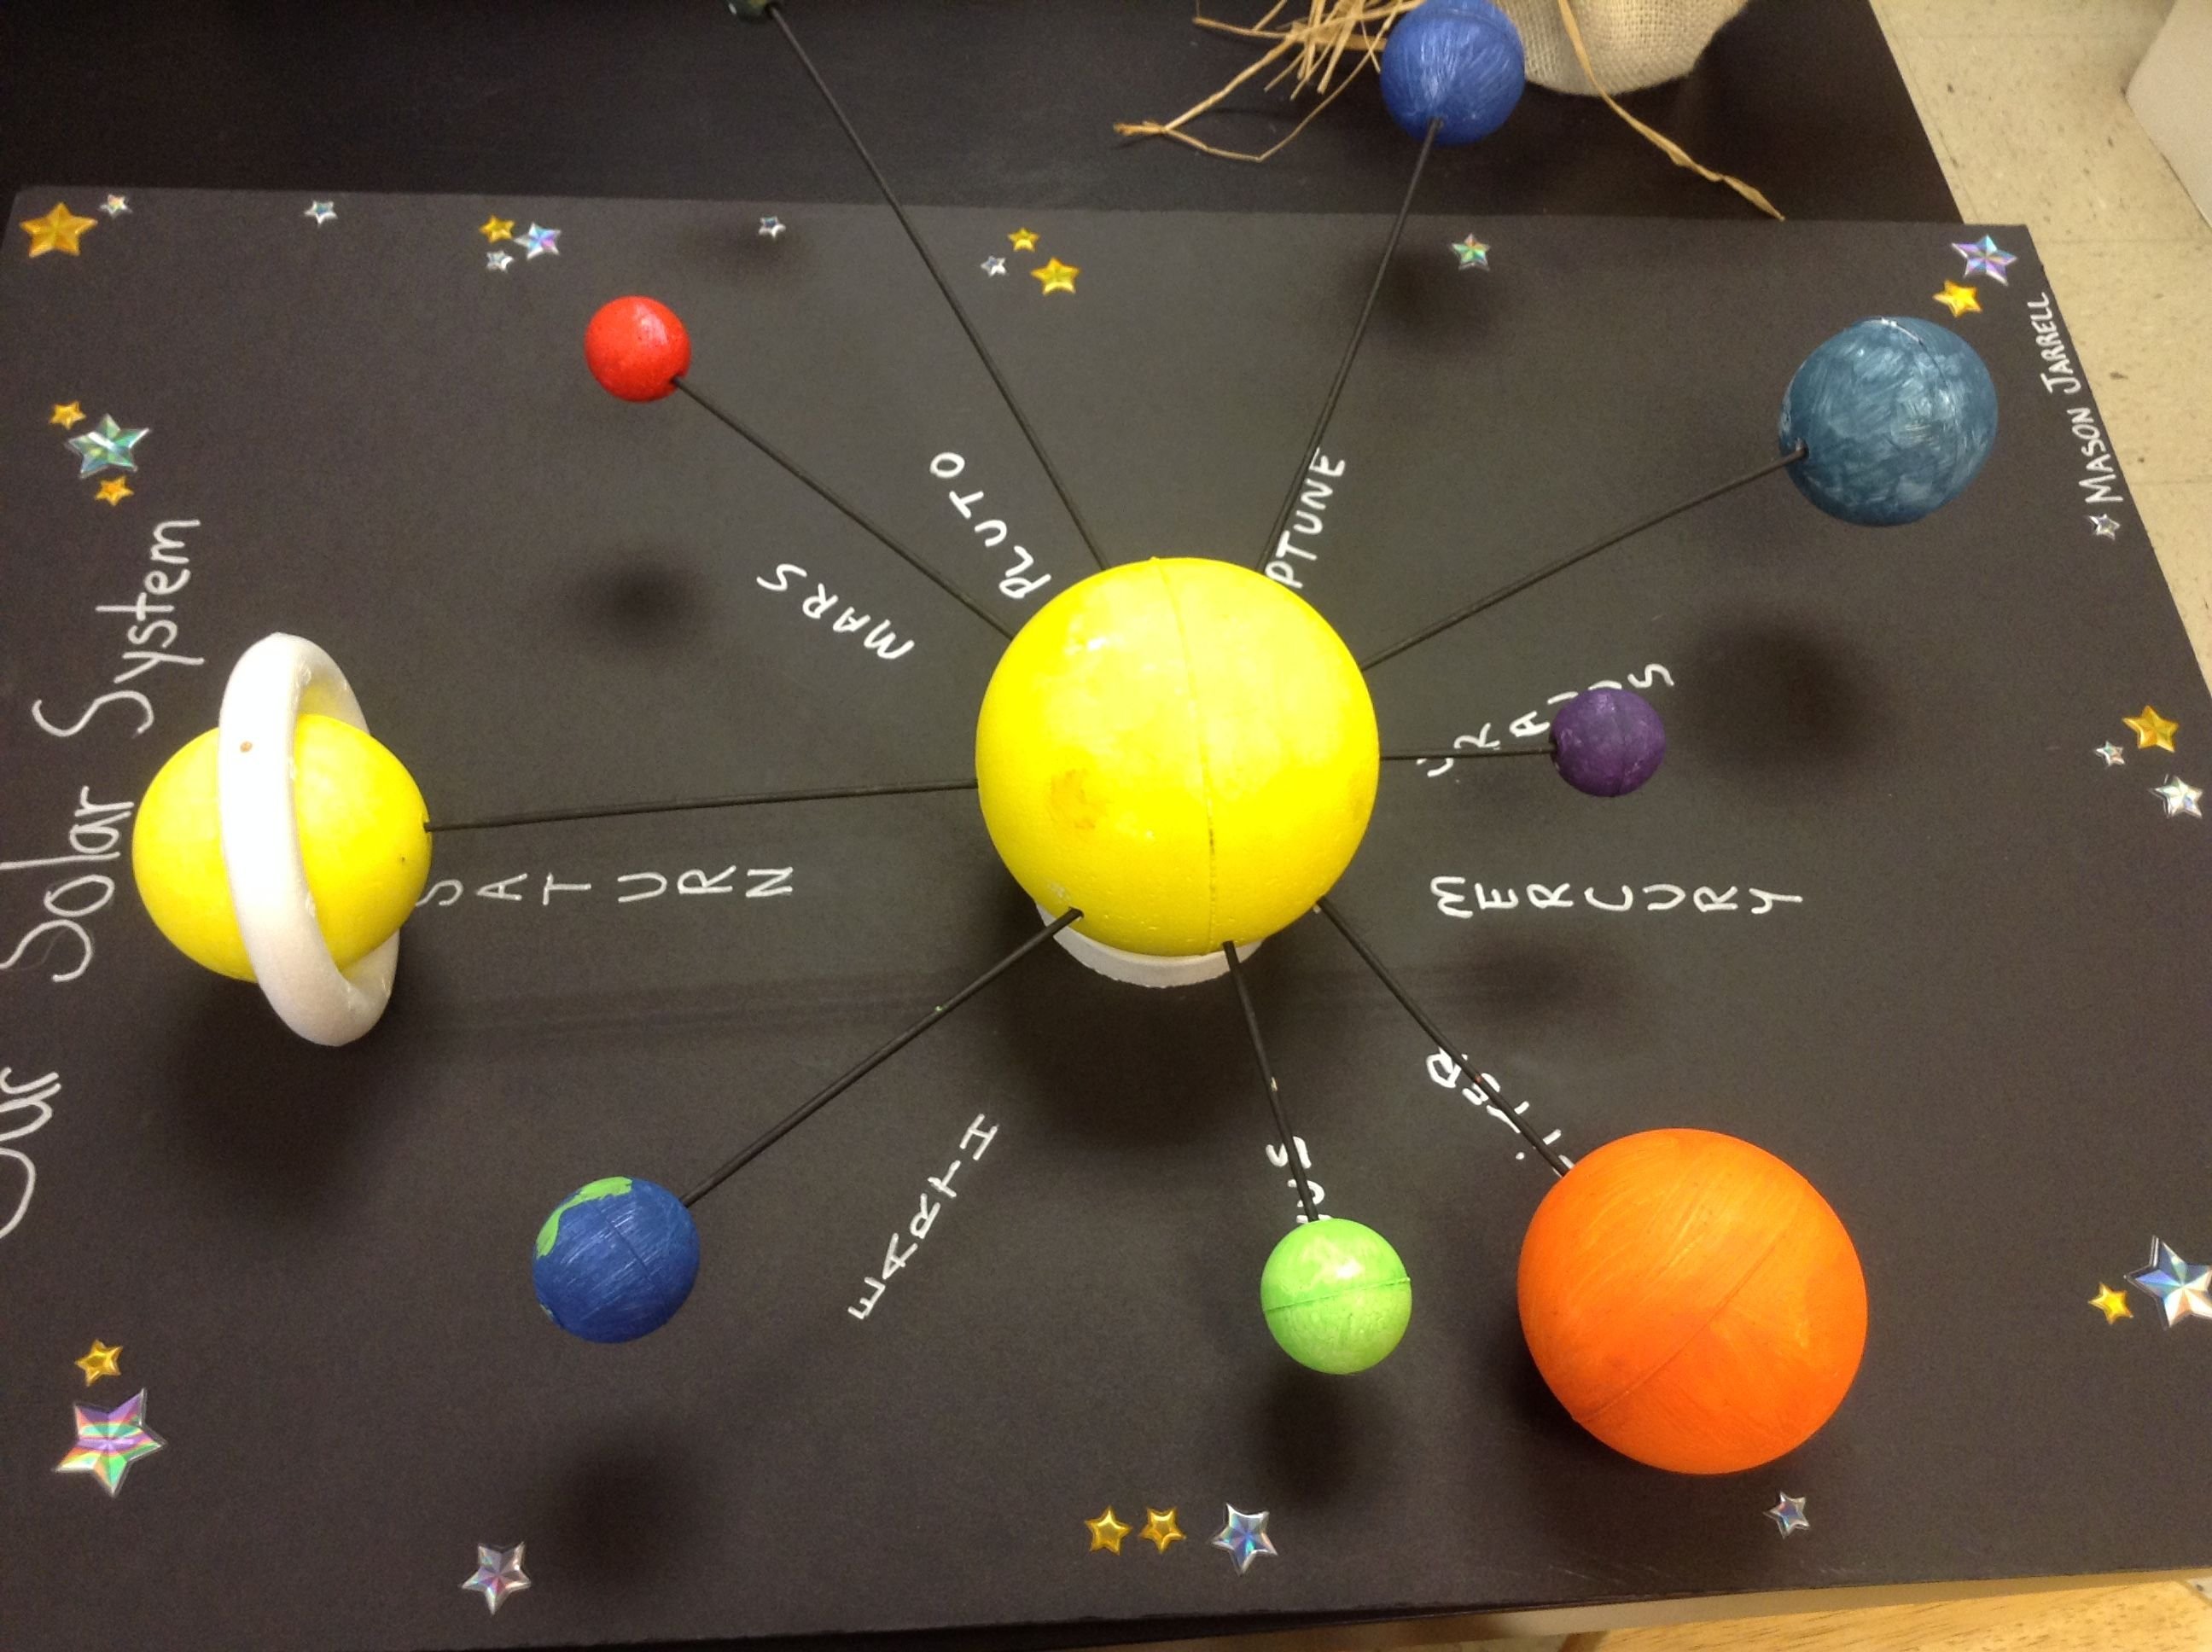 Поделки солнечной системы из пластилина на бумаге идеи по изготовлению своими руками фото